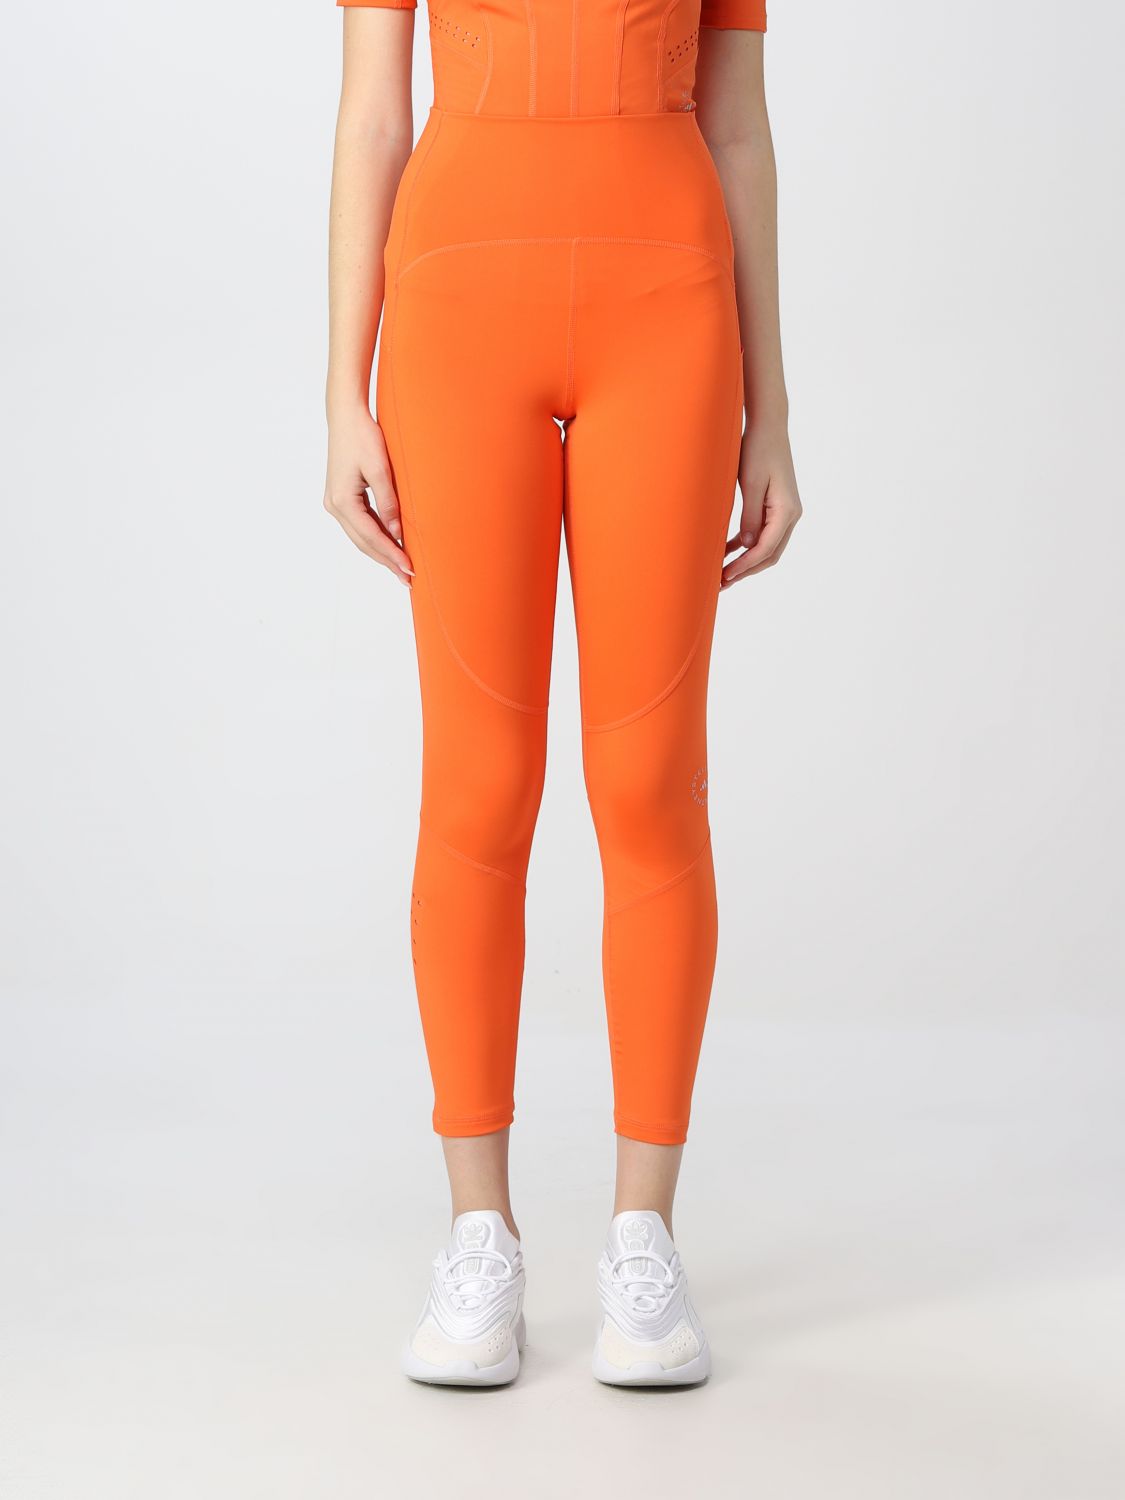 Hose Adidas By Stella Mccartney: Adidas By Stella Mccartney Damen Hose orange 1